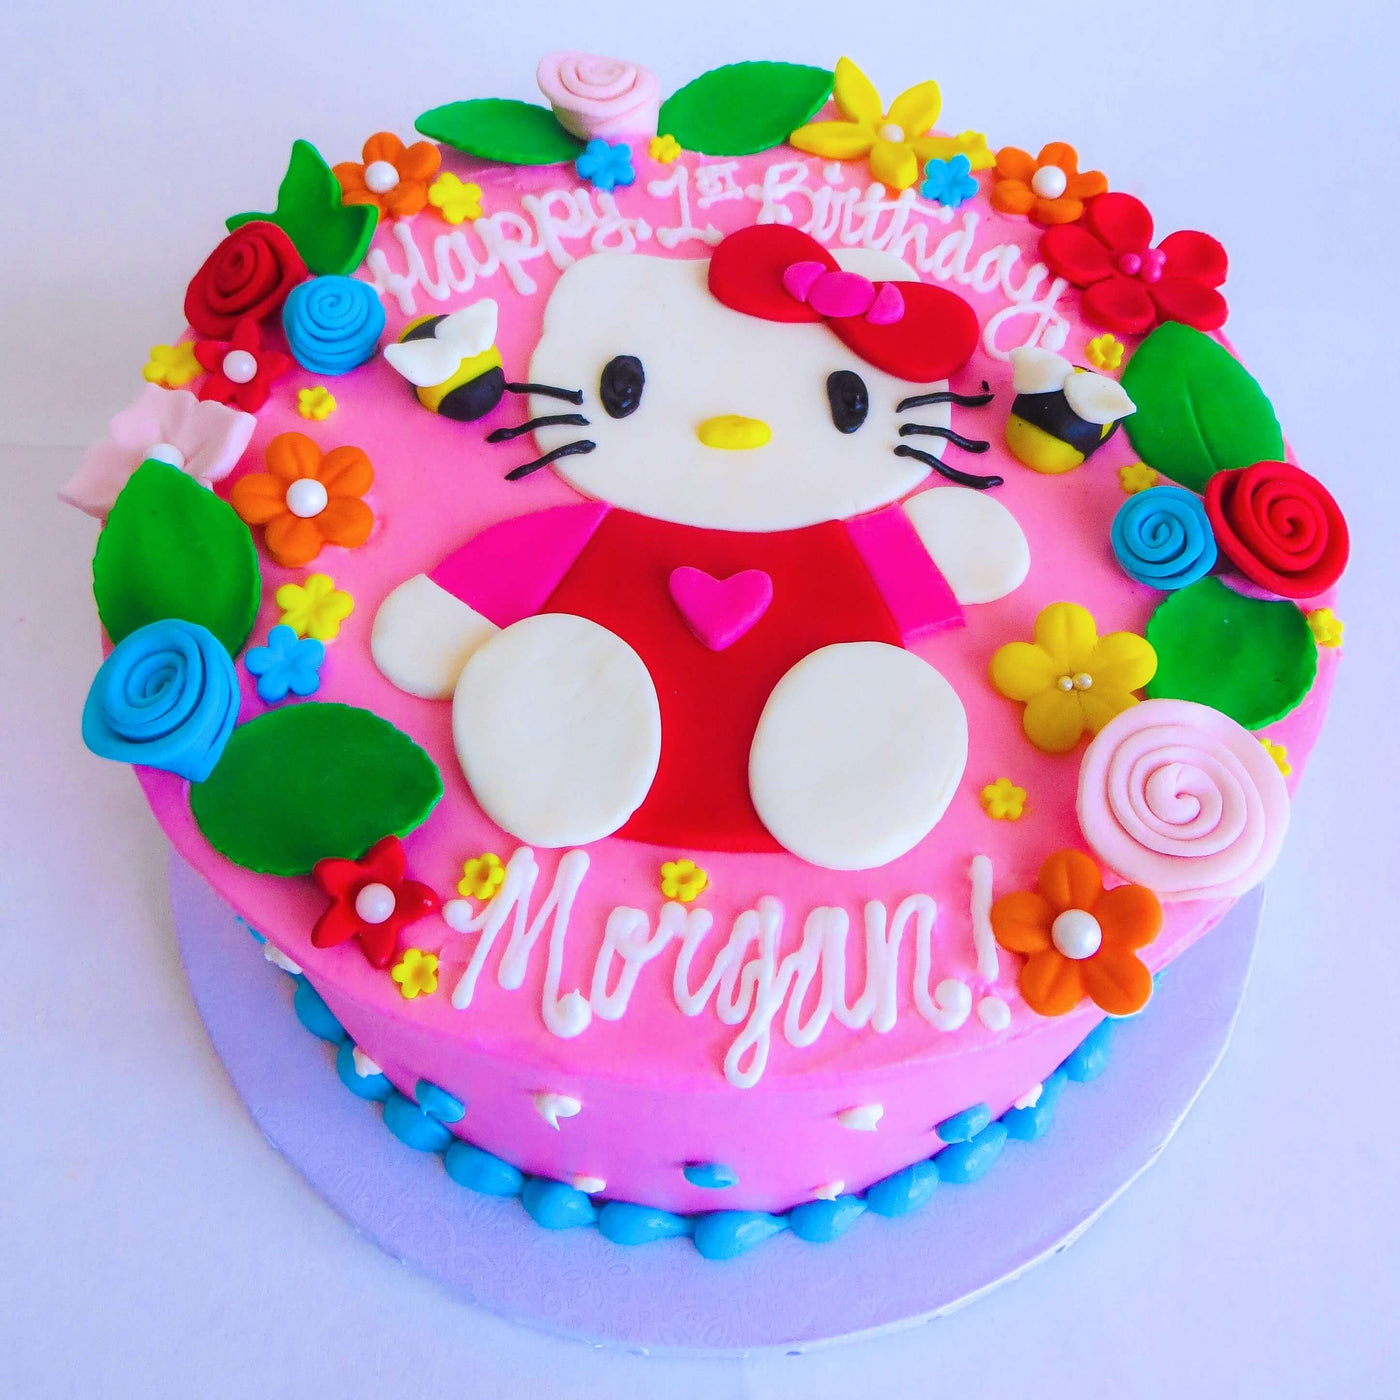 Hello Kitty Cake 1 - Sweet E's Bake Shop